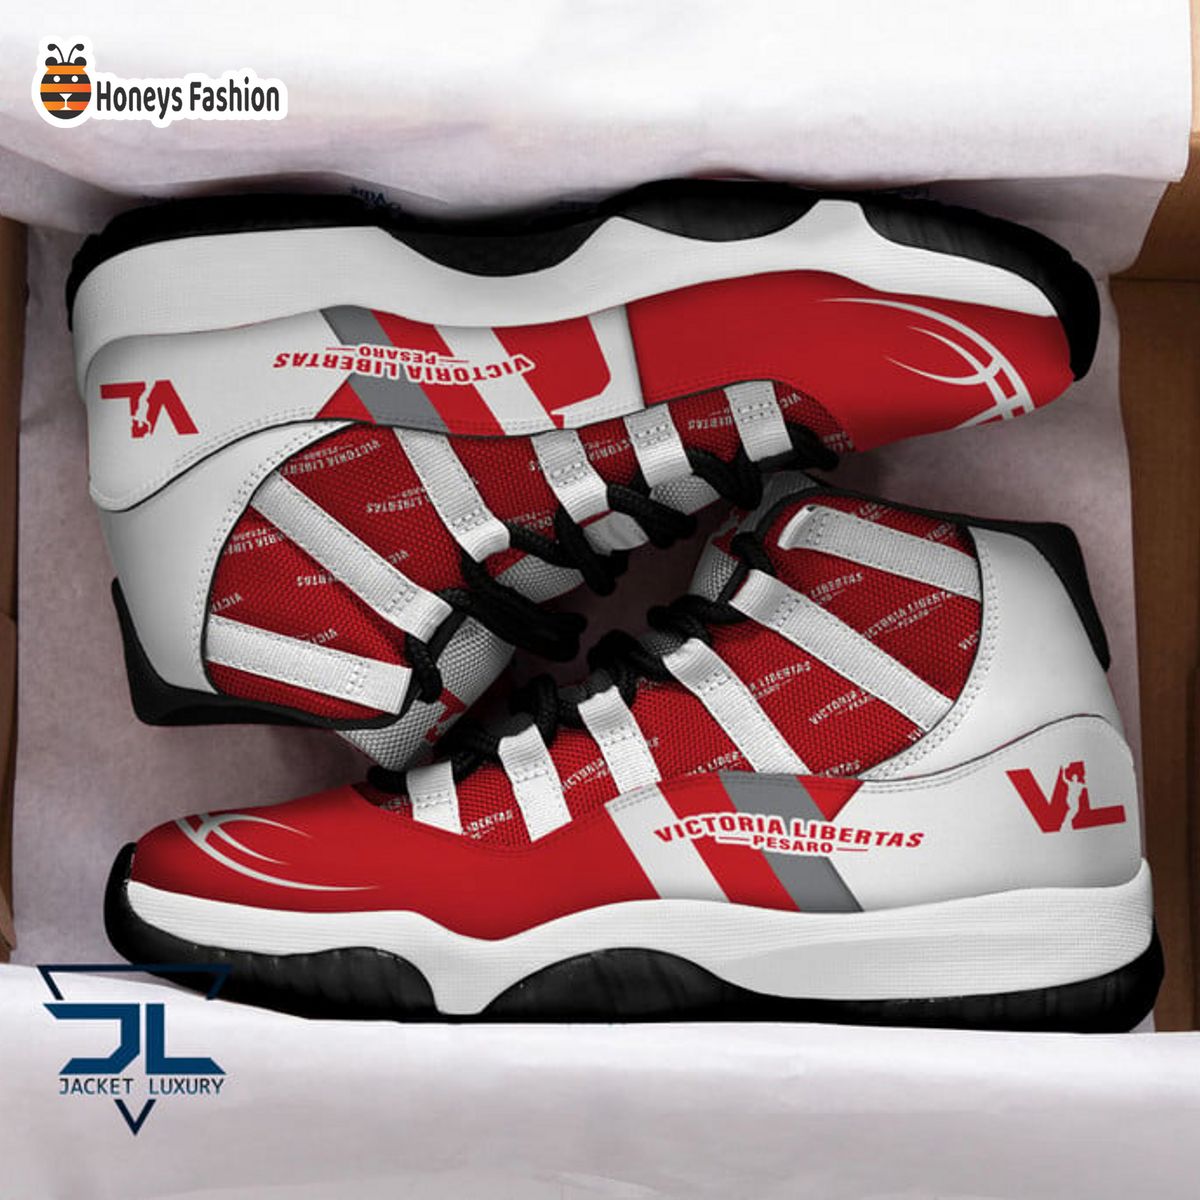 Victoria Libertas Pesaro Basket Air Jordan 11 Sneaker